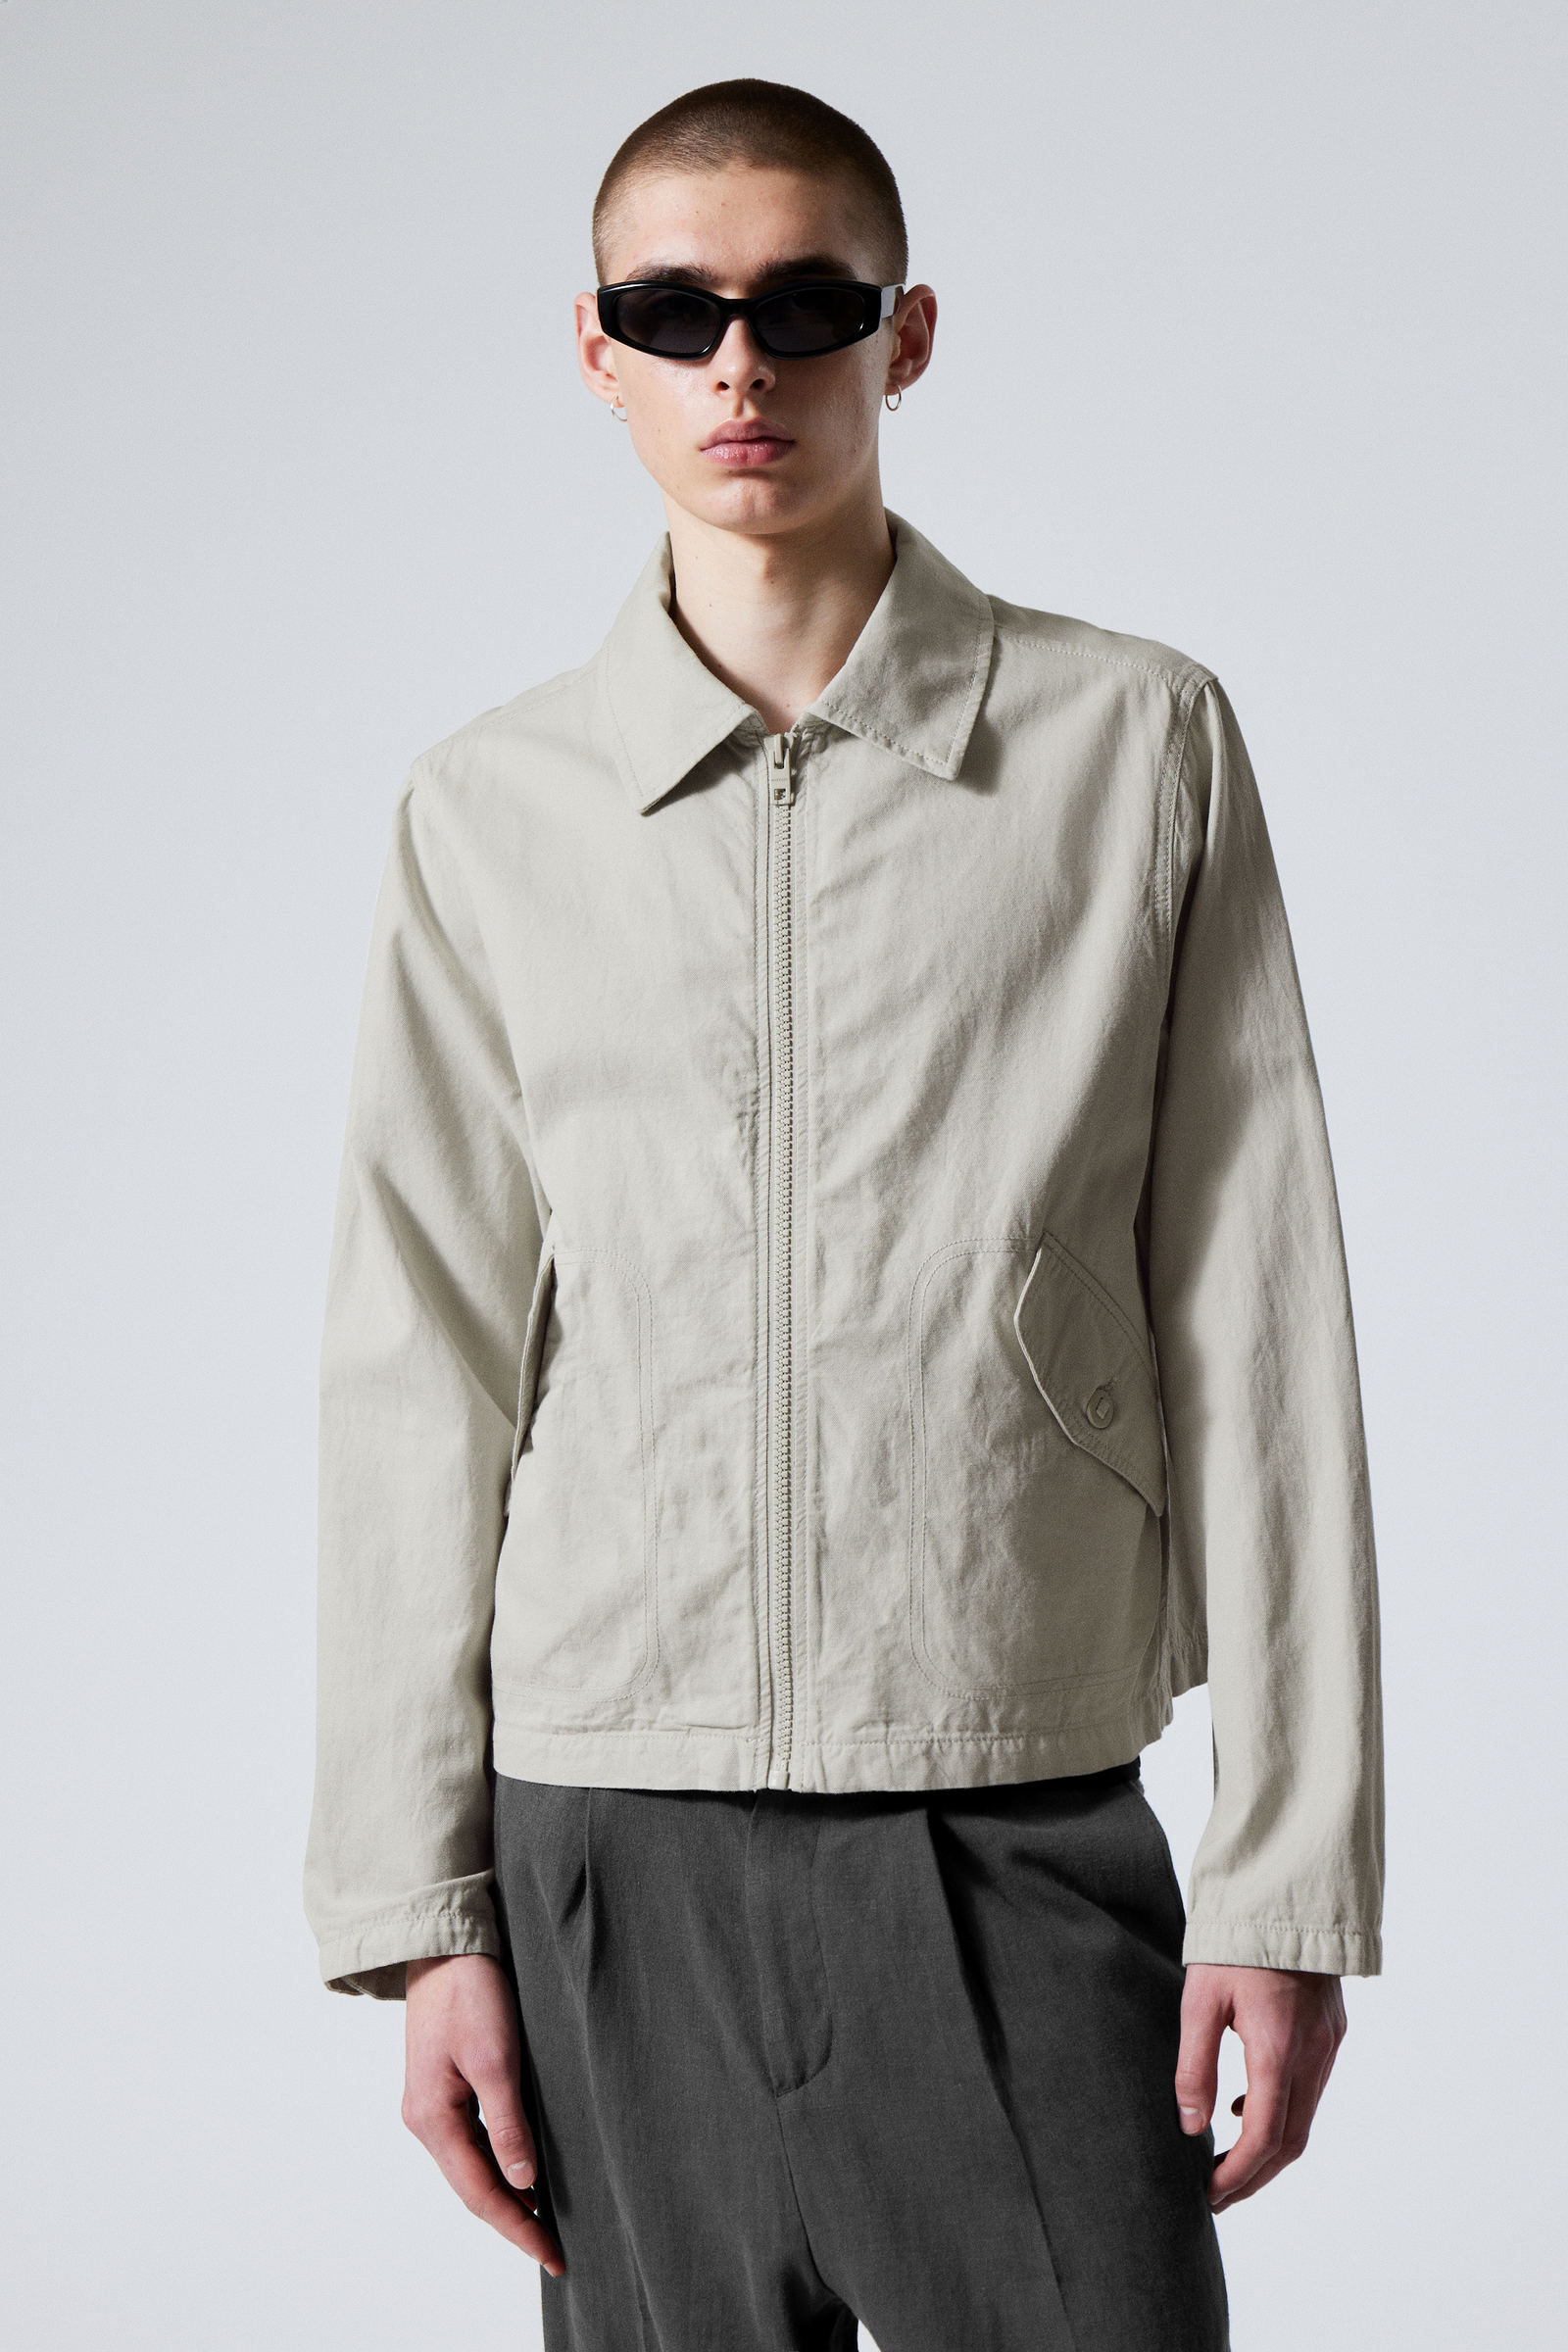 Men's Jackets & Coats | Shop Men's Outerwear Online